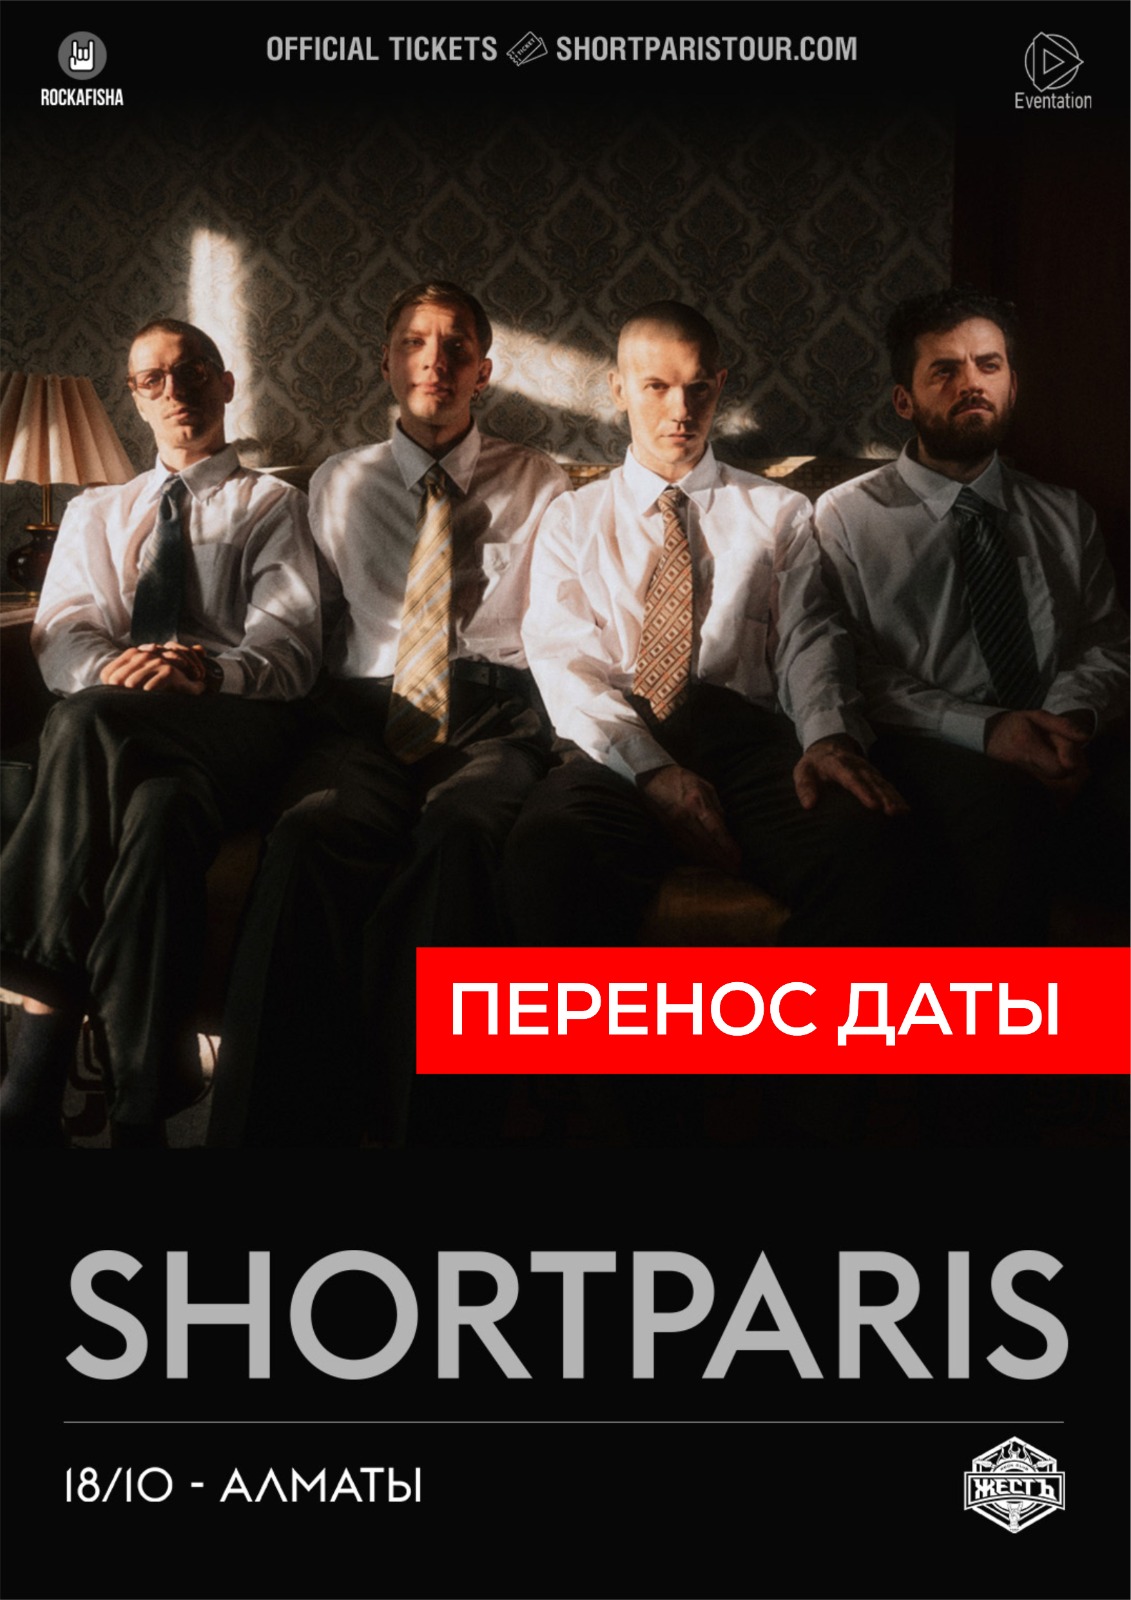 Афиша меропрития: SHORTPARIS в Алматы